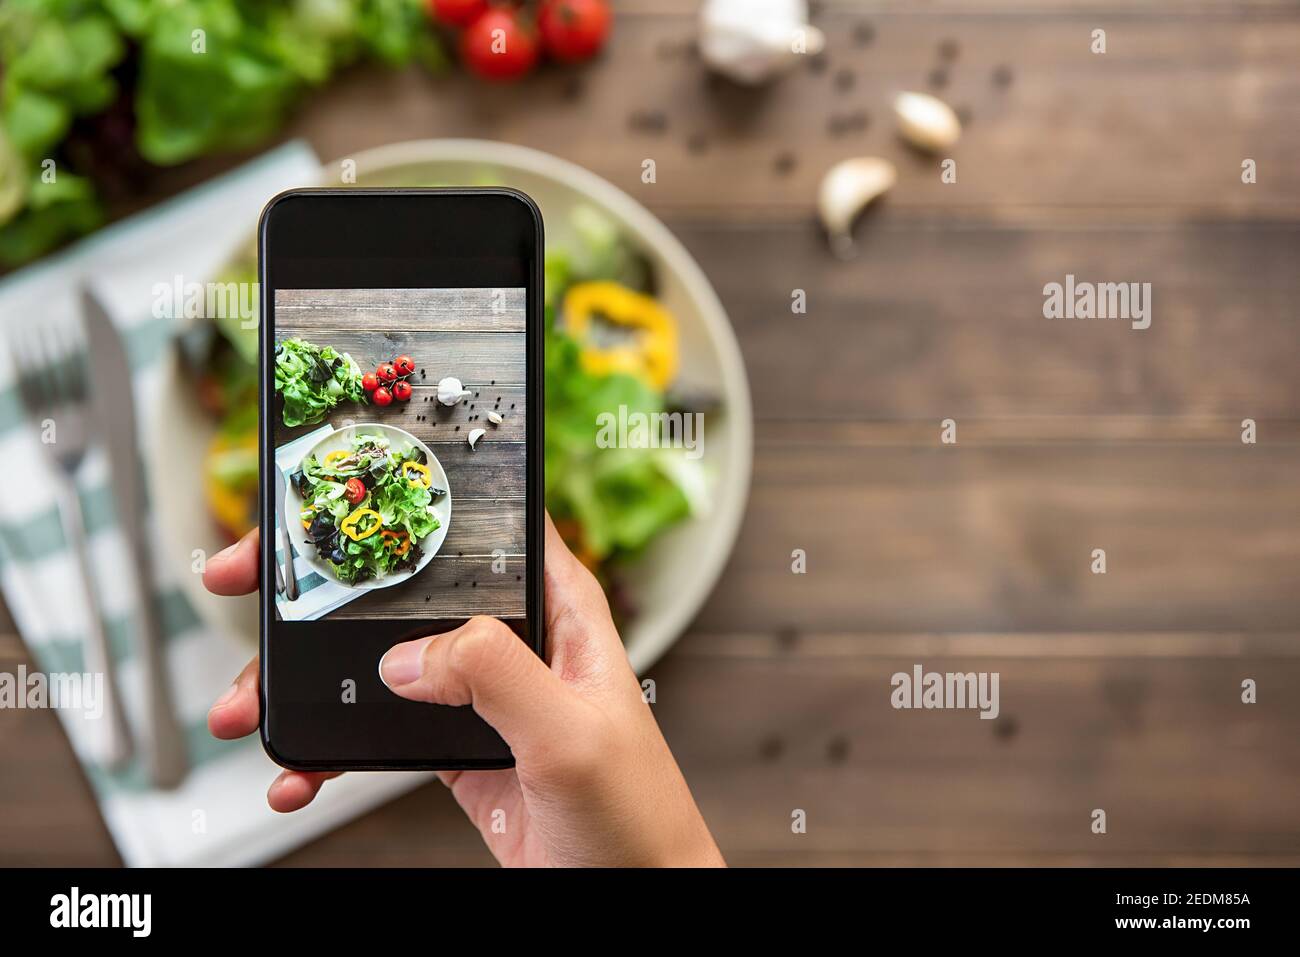 Food blogger utilizzando smartphone scattare foto di bello mix fresco insalata verde sul tavolo di legno da condividere sui social media Foto Stock